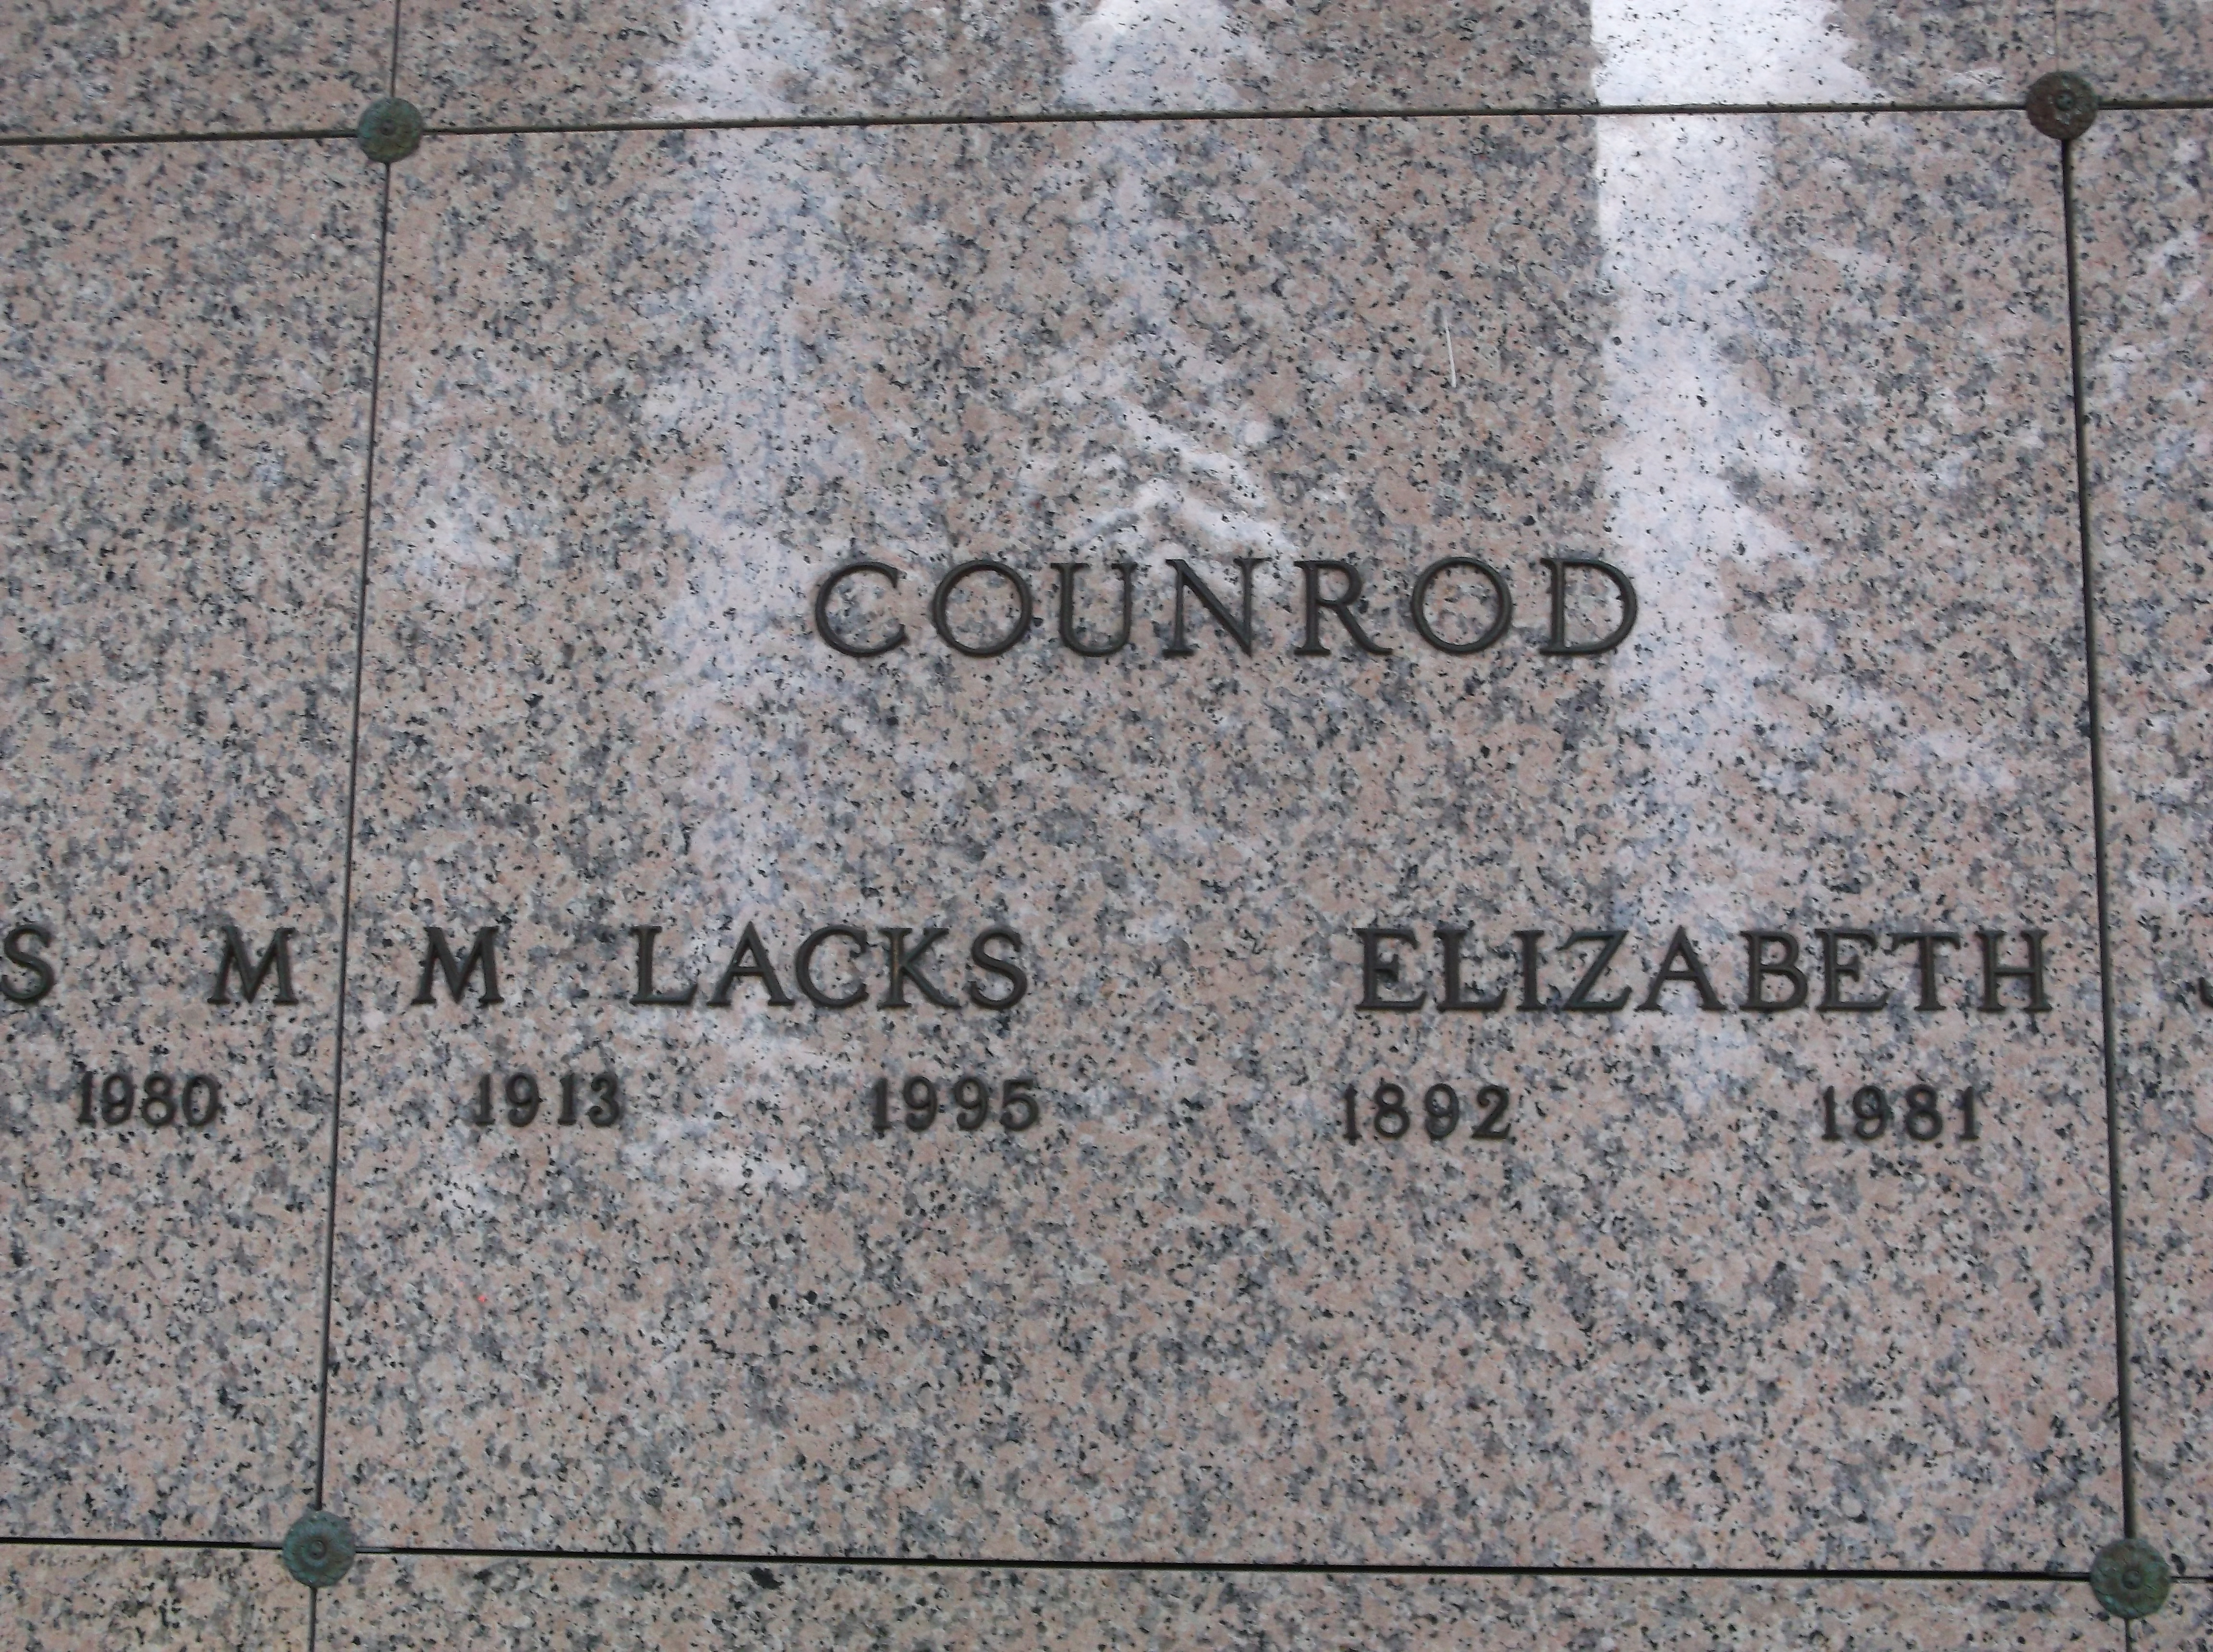 Elizabeth Counrod